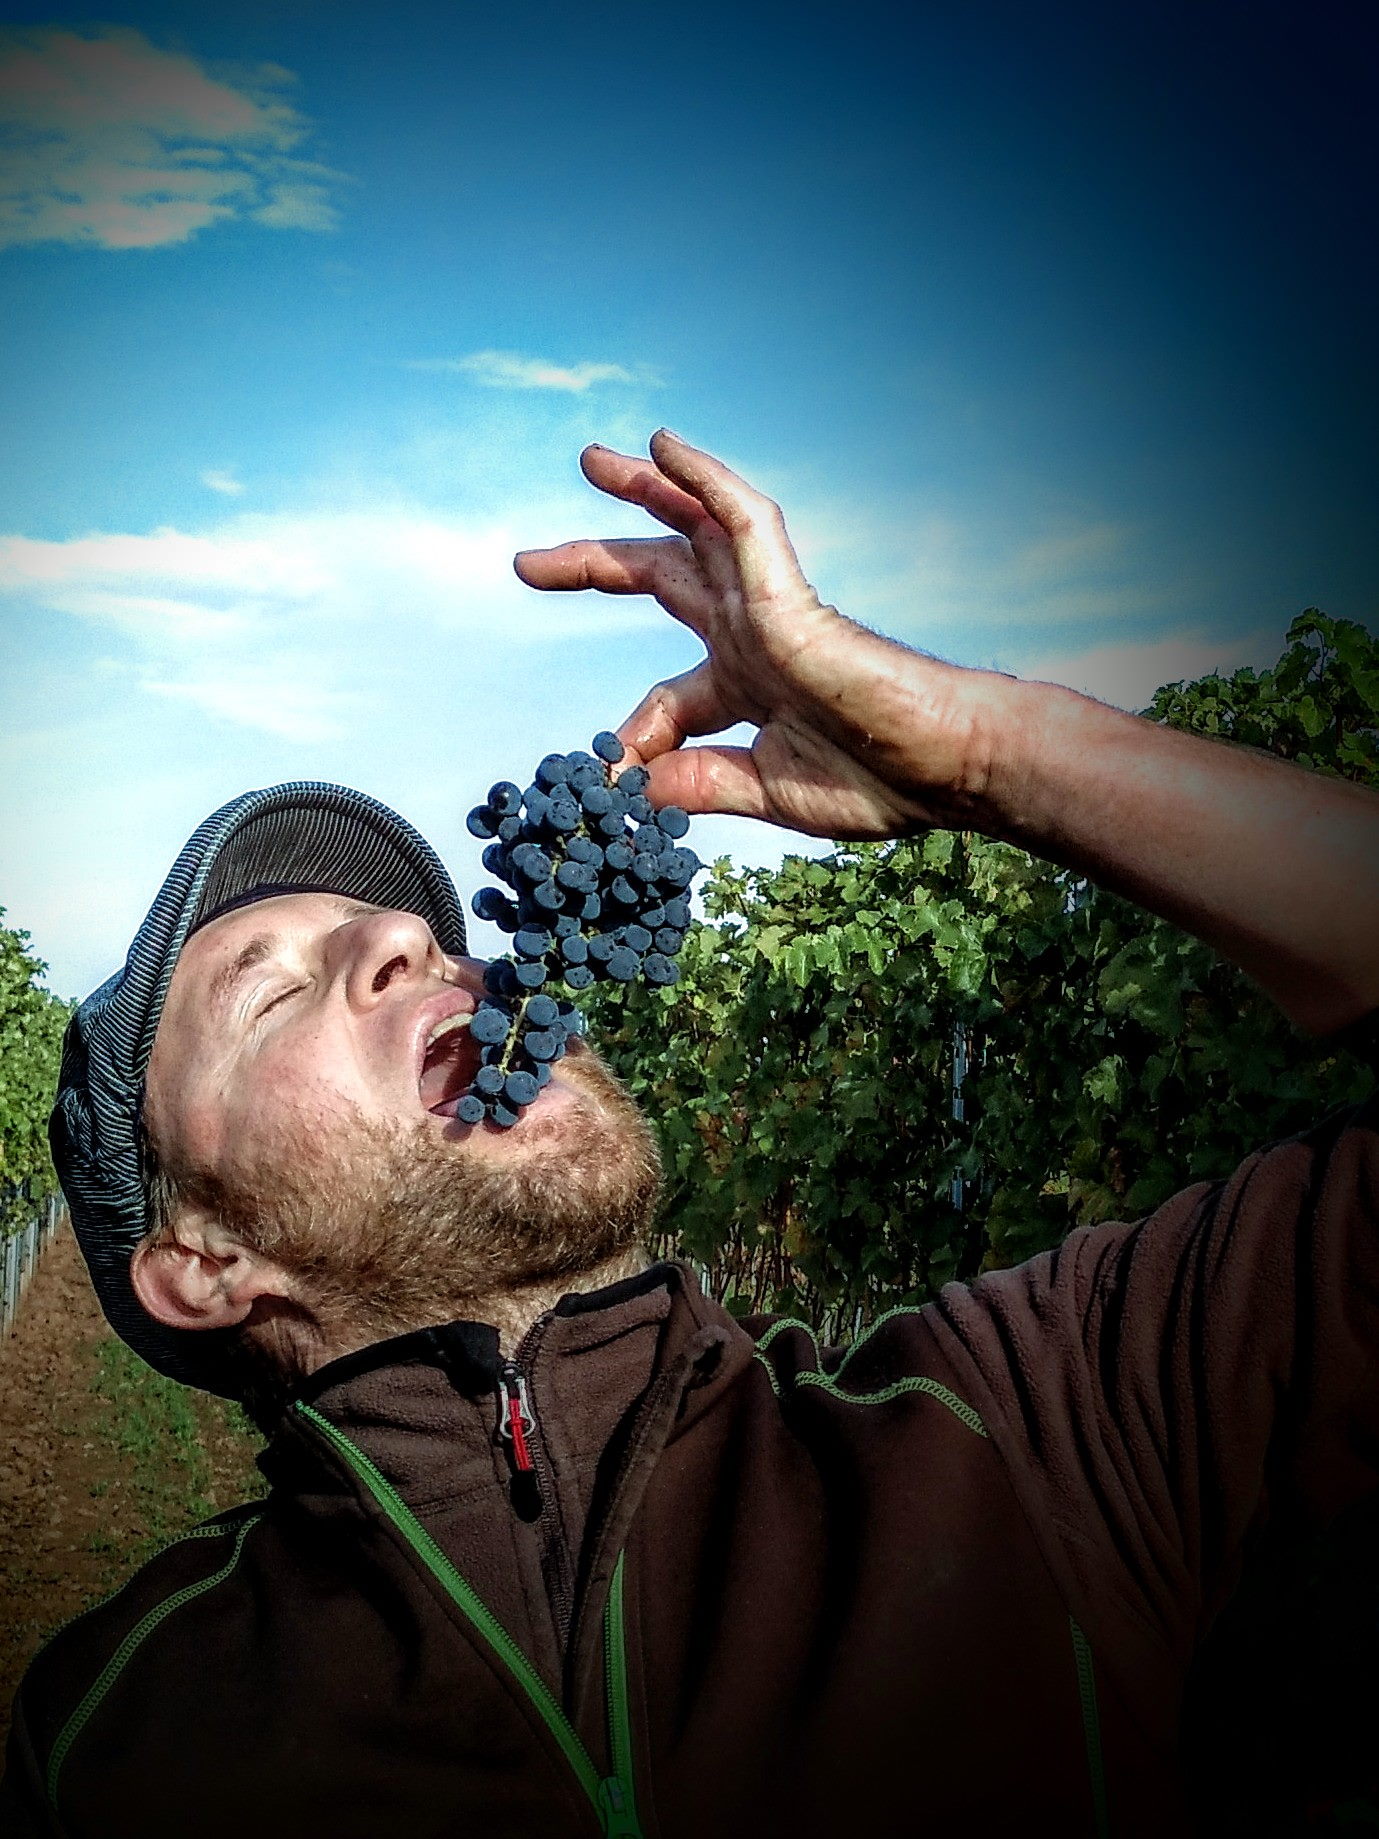 Weinbauer Philipp Wedekind, zwischen seinen Reben, kostet genussvoll Weintrauben